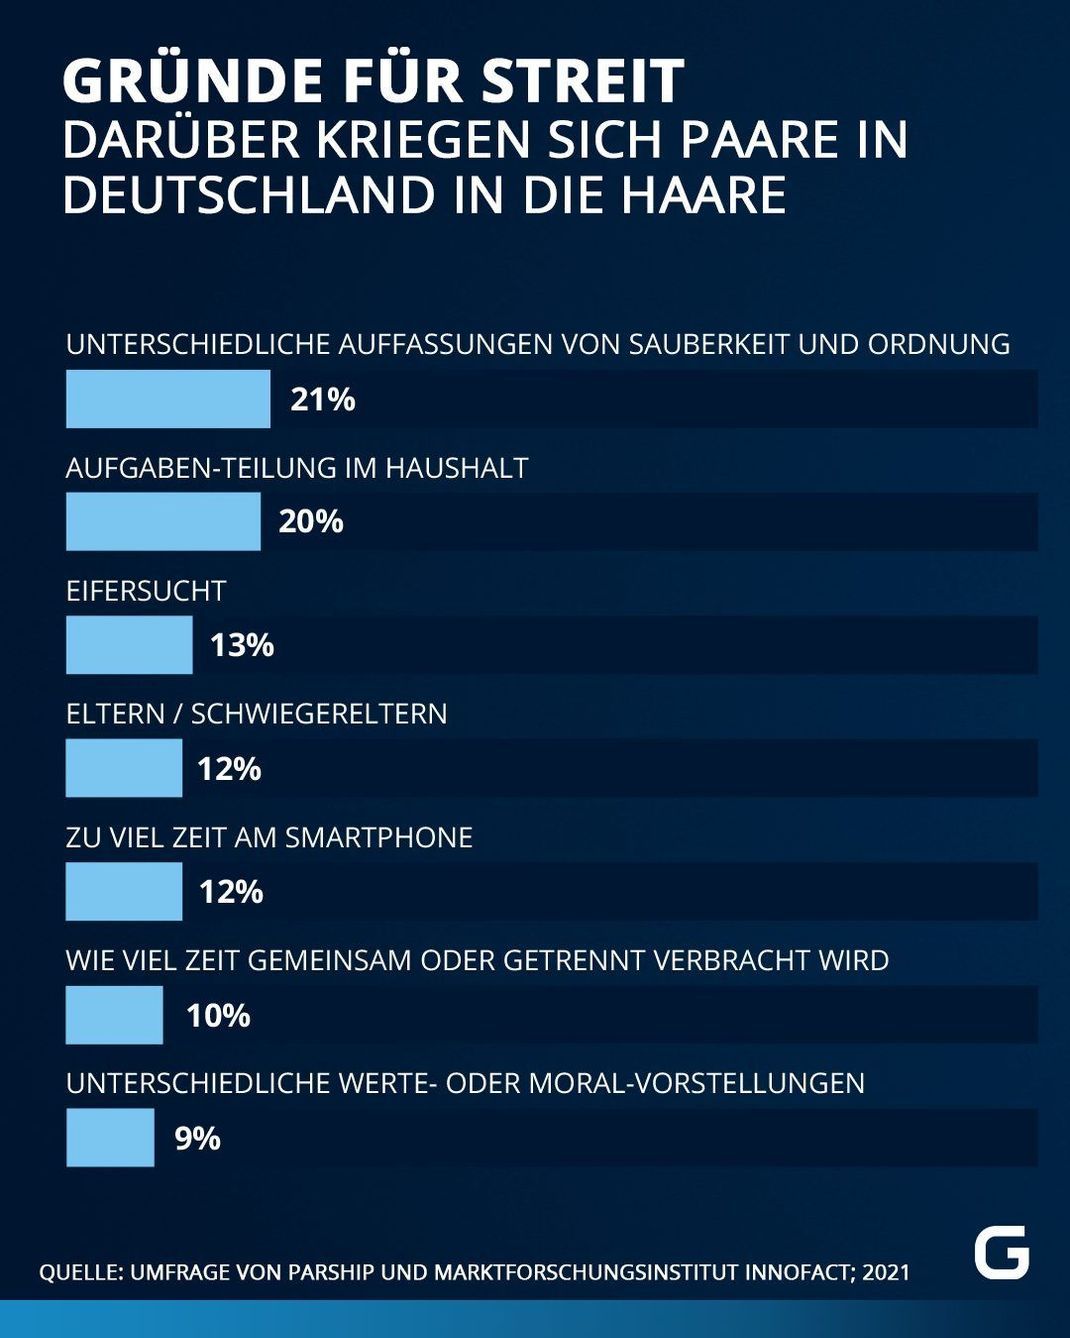 Gründe für Streit: Darum streiten Paare in Deutschland am meisten. 